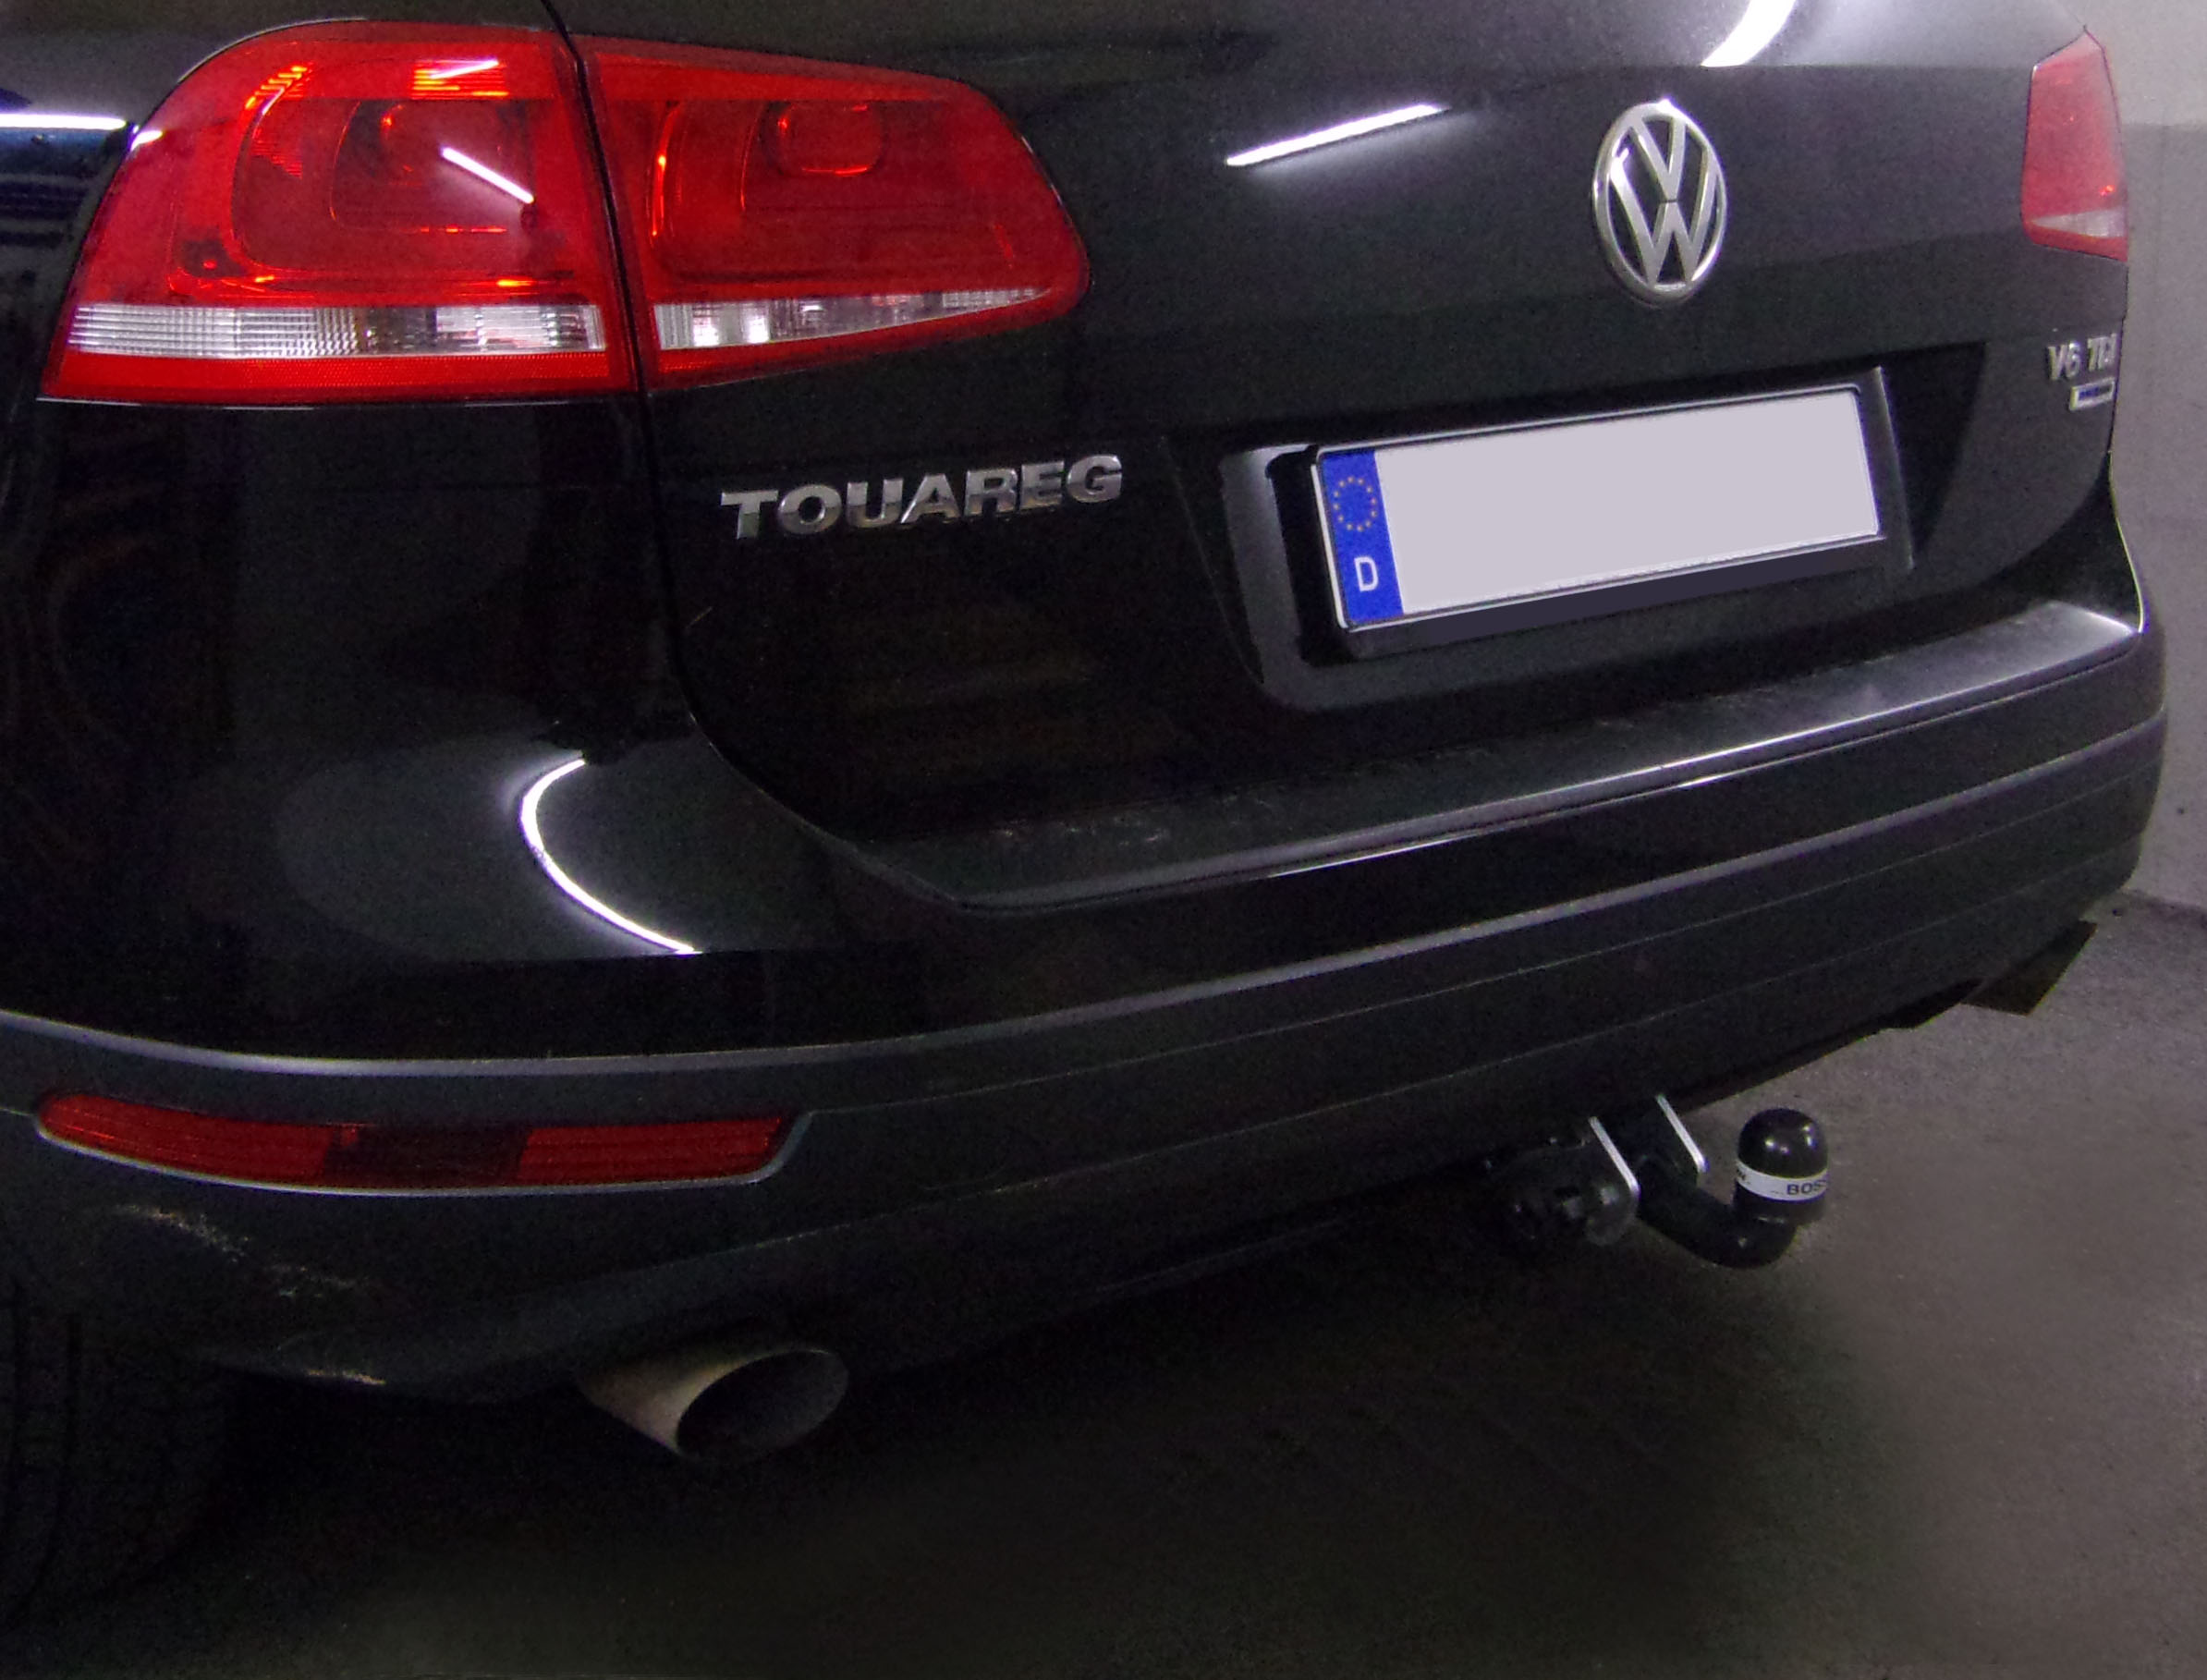 Anhängerkupplung für VW-Touareg f. Fzg. m. Reserverad am Boden, Baureihe 2010-2017 starr